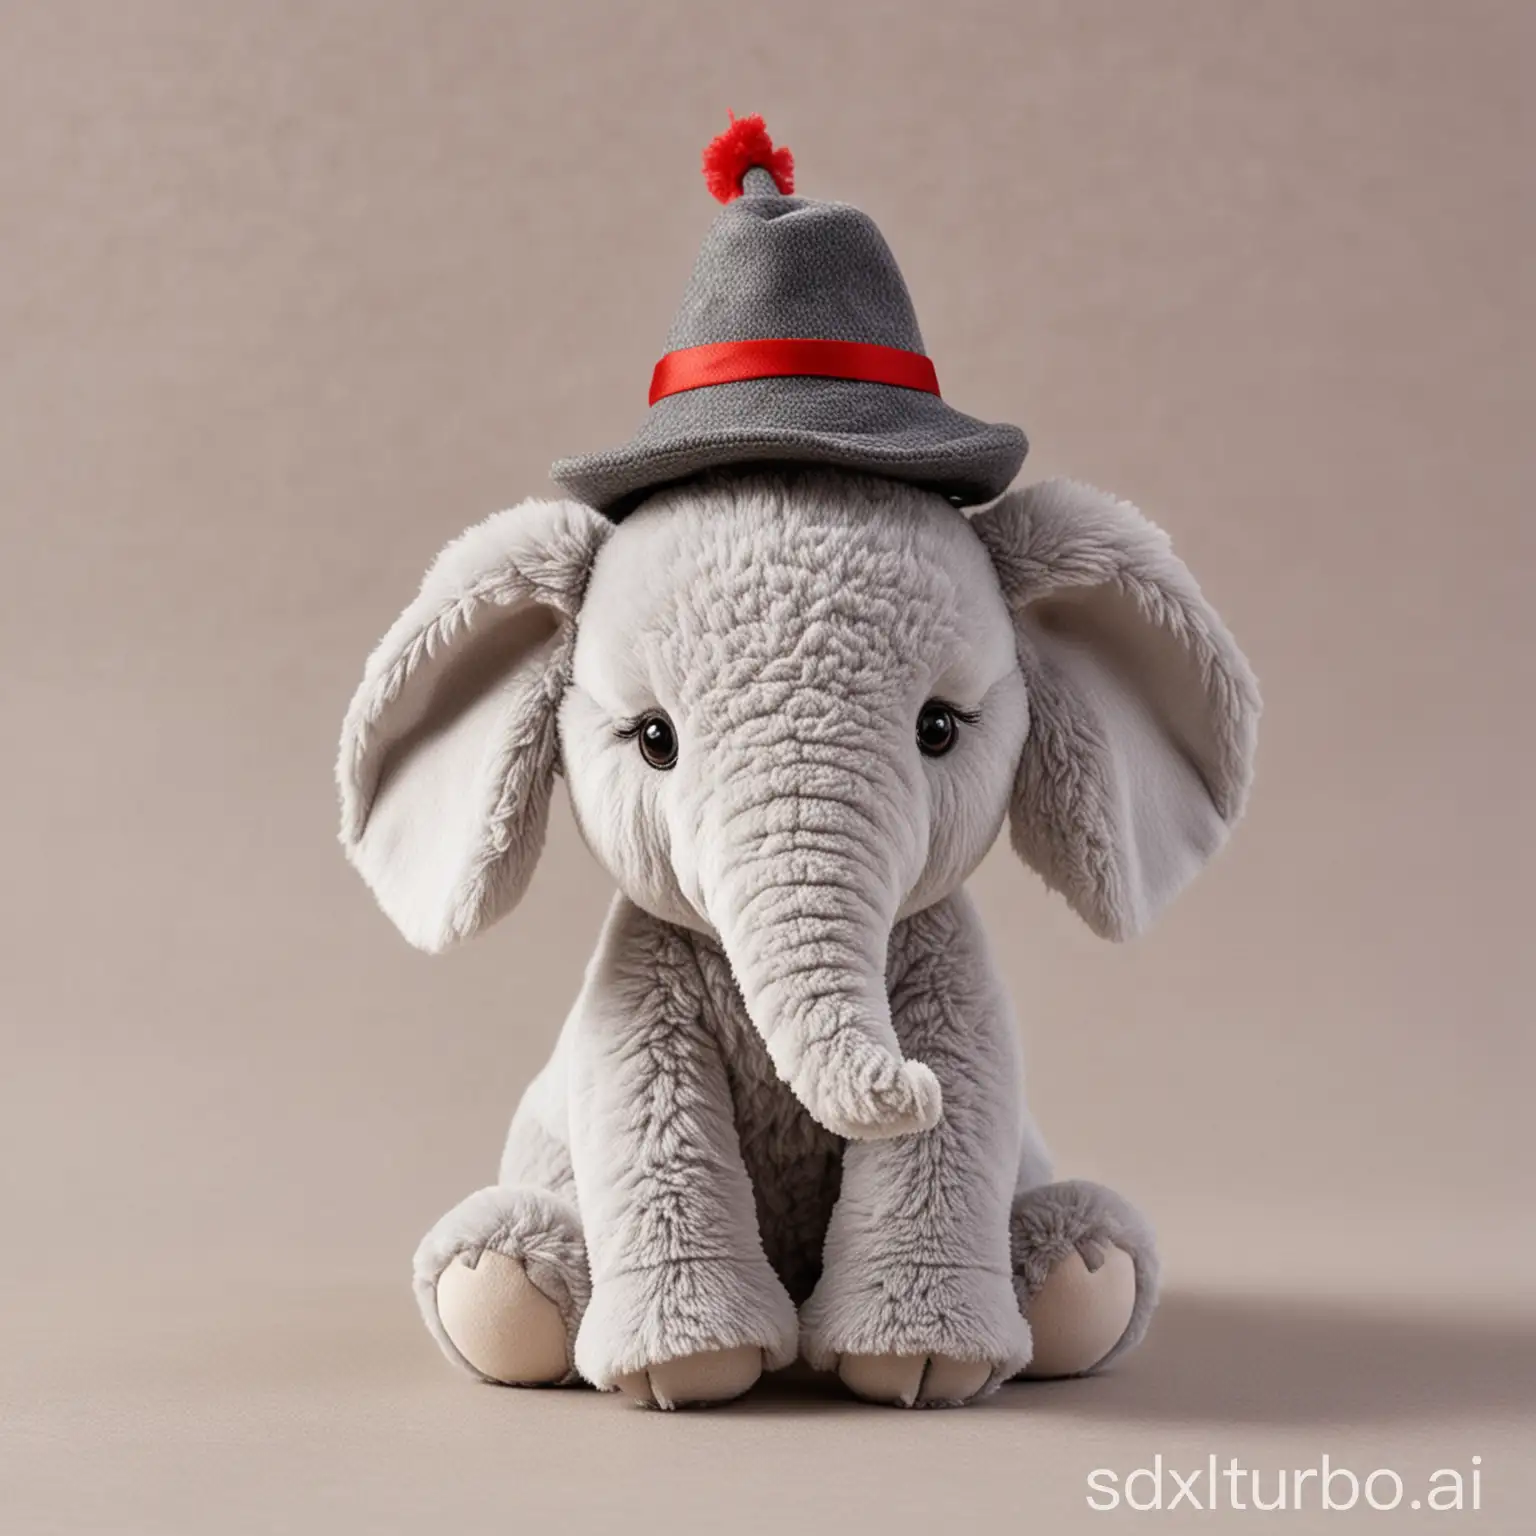 Adorable-Plush-Elephant-Wearing-a-Stylish-Hat